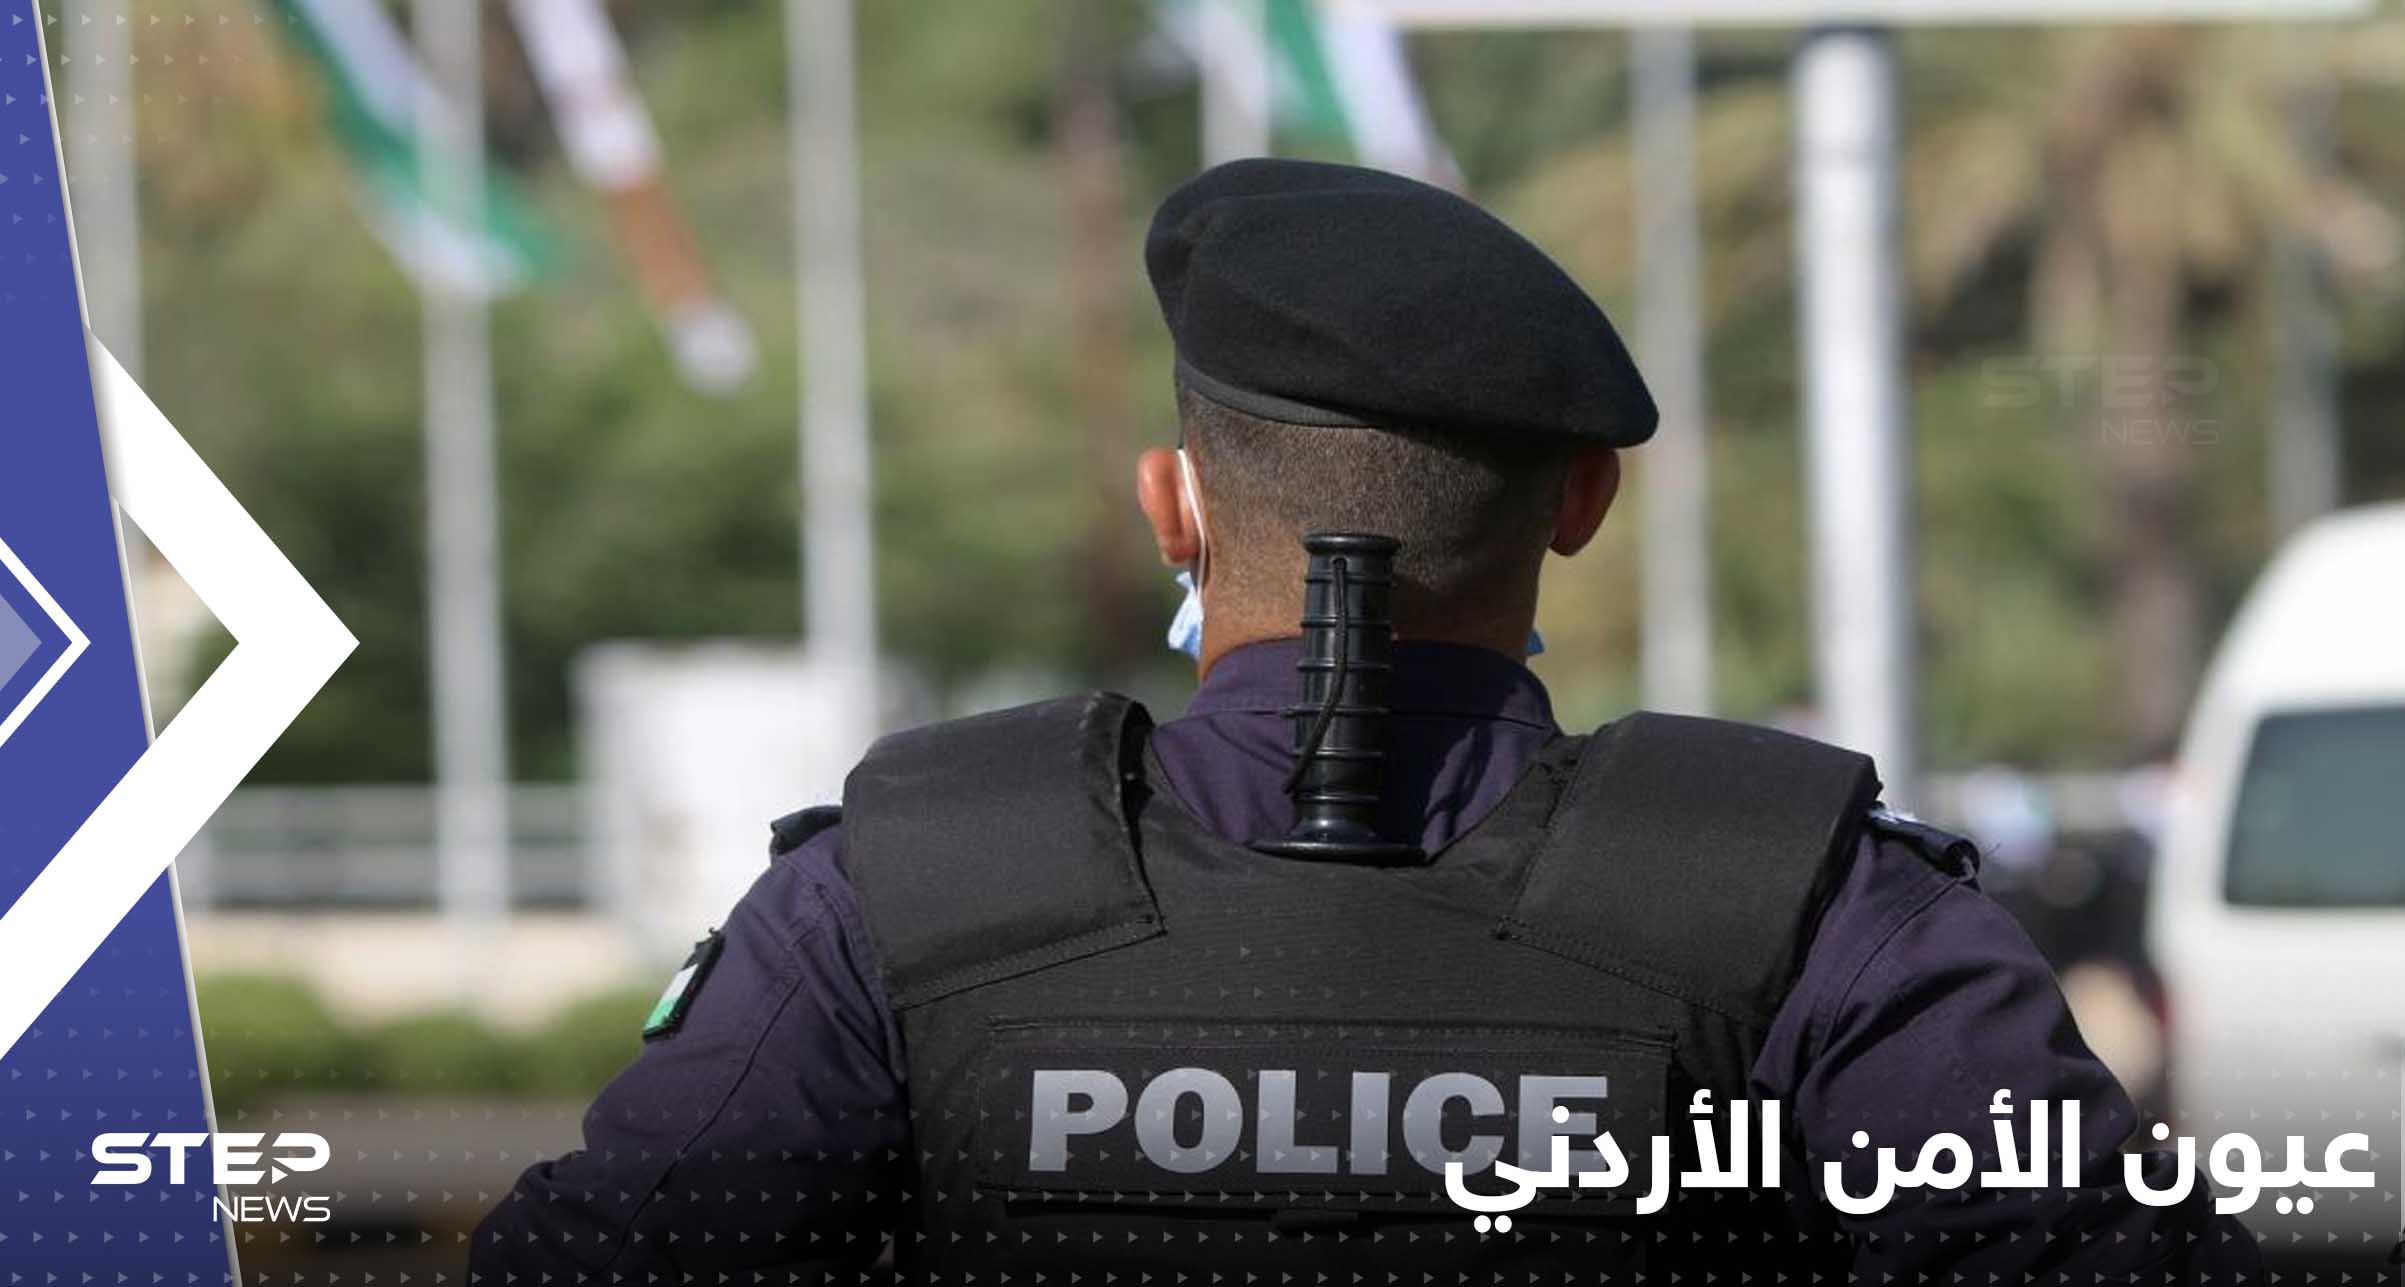 عيون الأمن الأردني تشدد الرقابة على وسائل التواصل